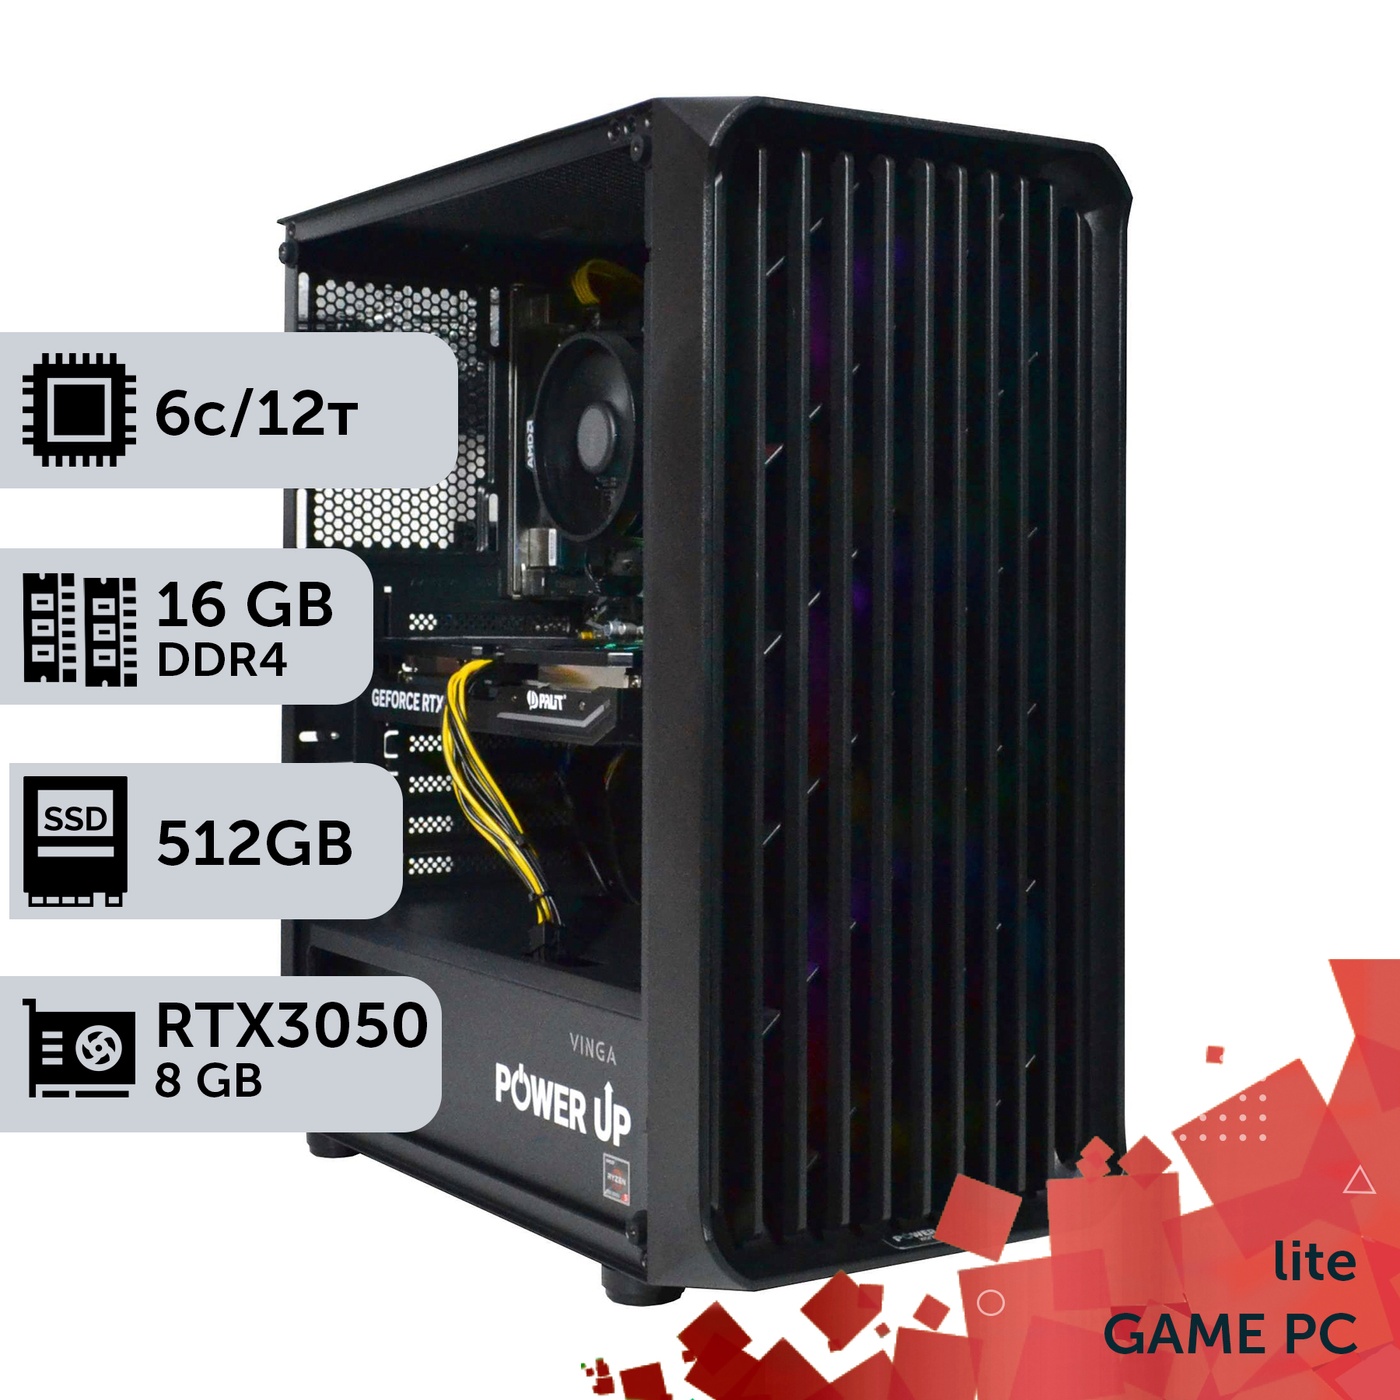 Ігровий комп'ютер GamePC Lite #172 Ryzen 5 4500/16 GB/SSD 512GB/GeForce RTX 3050 8GB